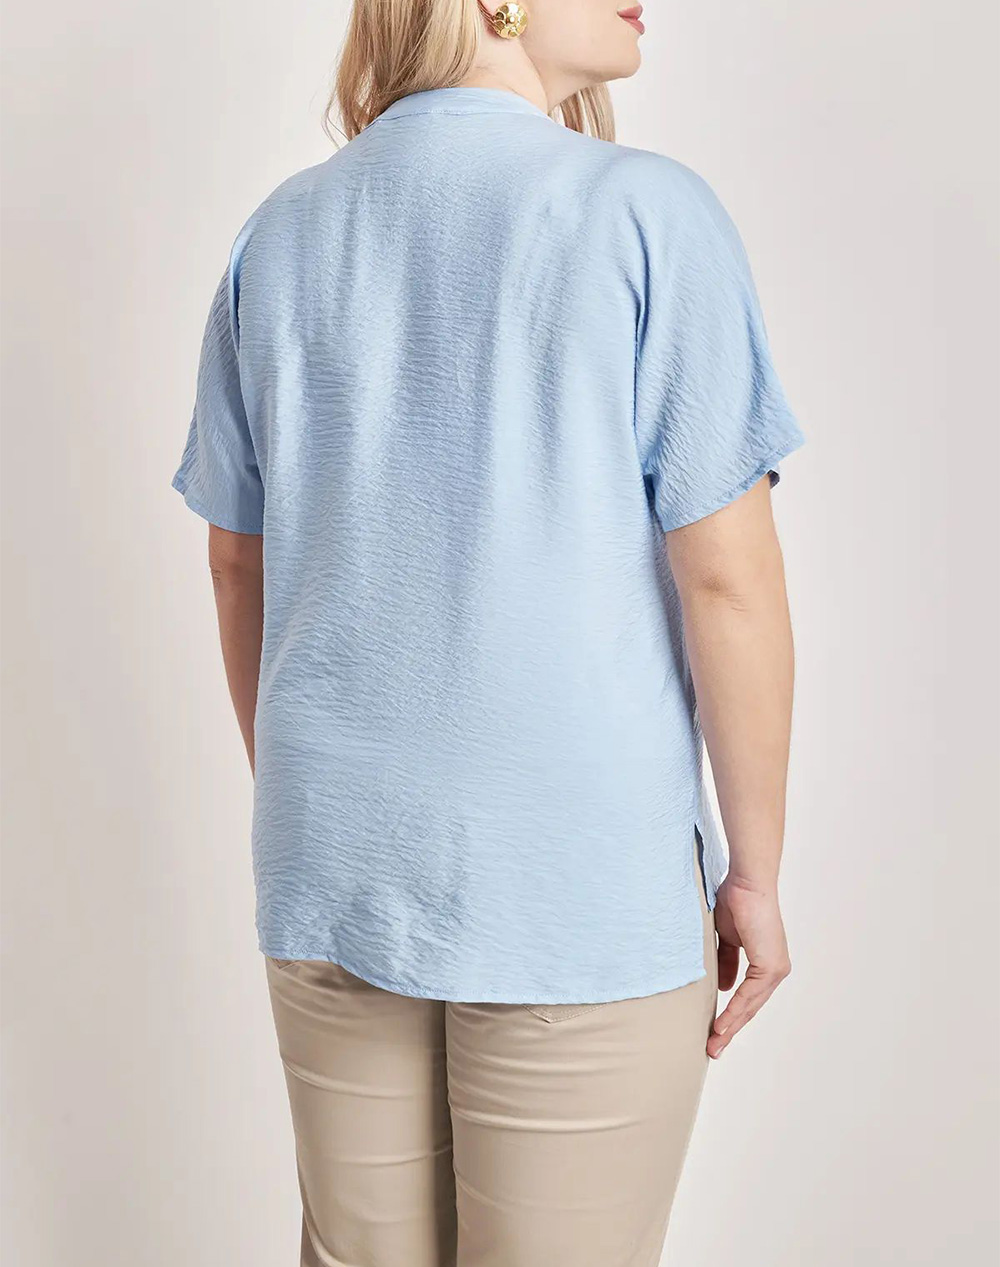 PARABITA Washed shirt with short sleeves